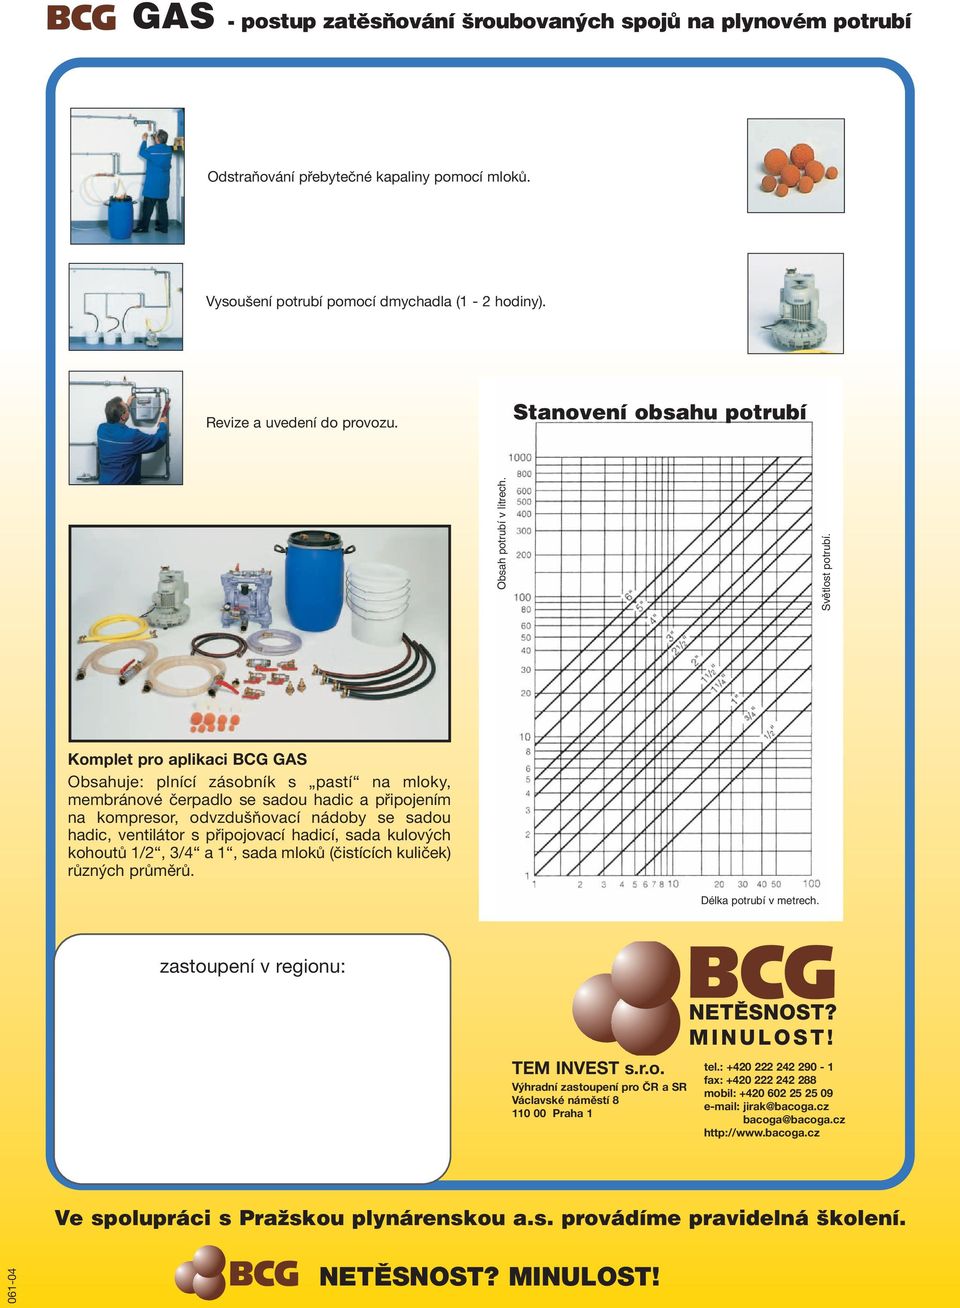 Komplet pro aplikaci BCG GAS Obsahuje: plnící zásobník s pastí na mloky, membránové čerpadlo se sadou hadic a připojením na kompresor, odvzdušňovací nádoby se sadou hadic, ventilátor s připojovací